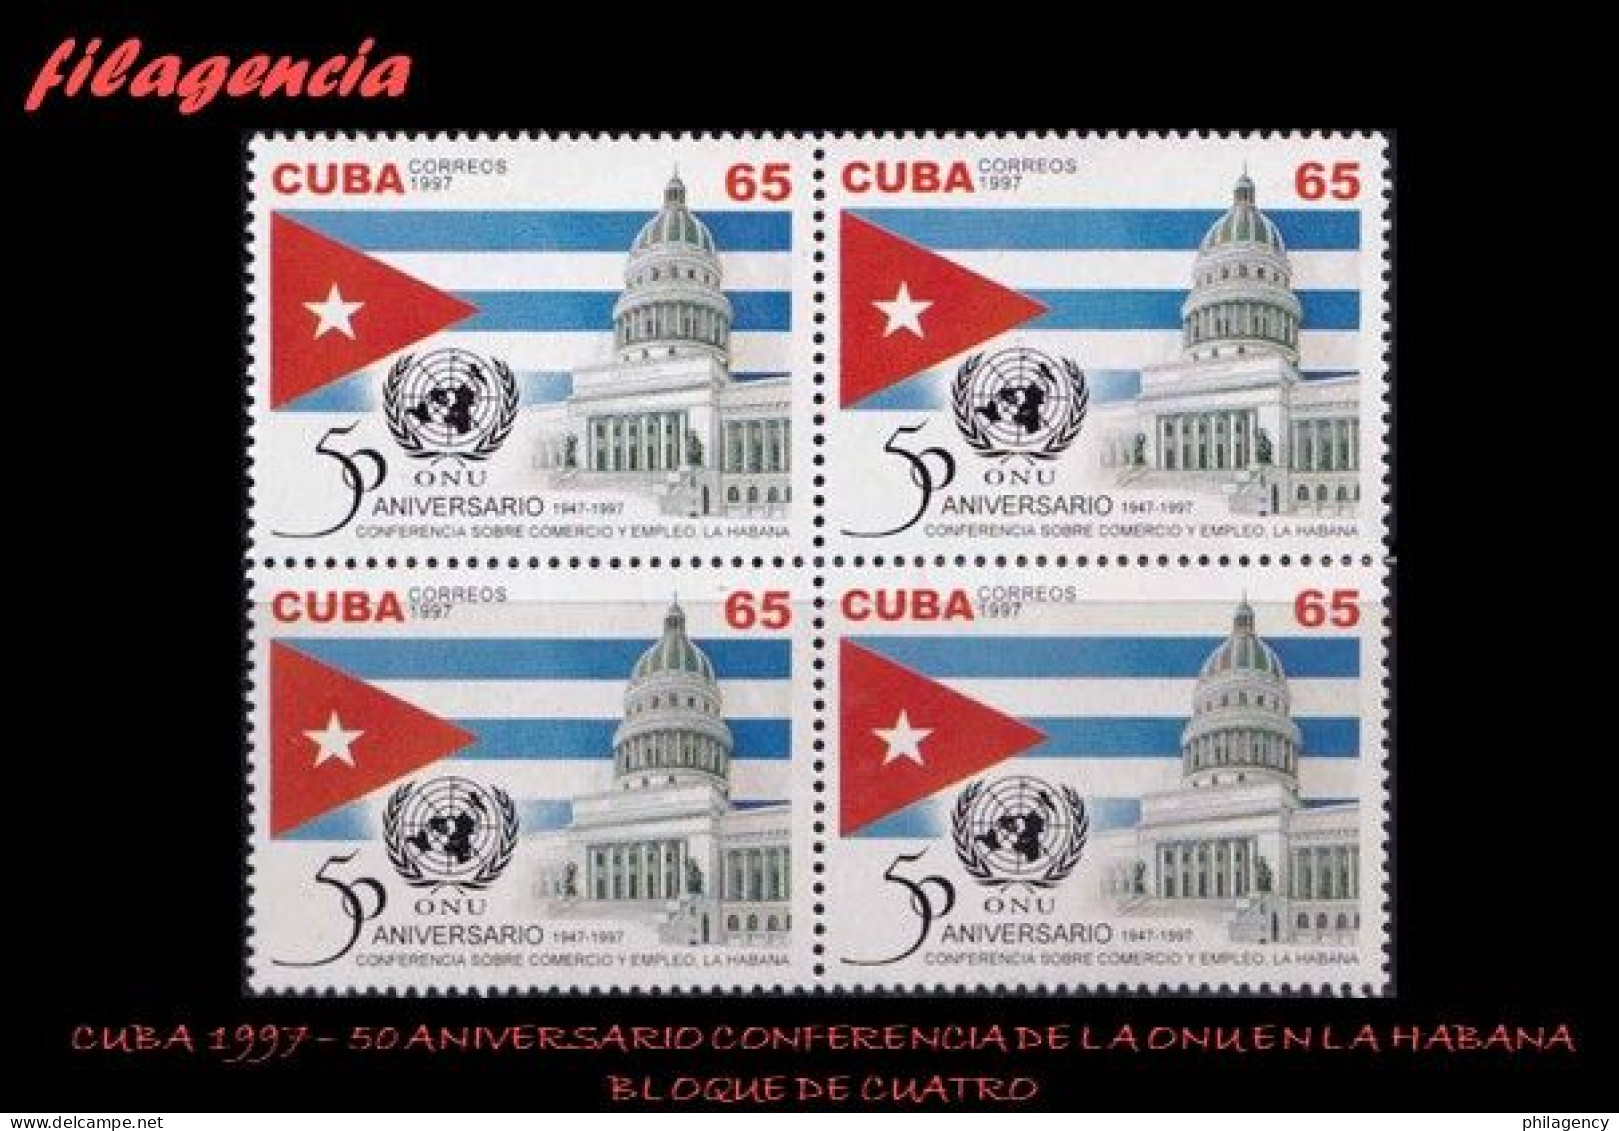 CUBA. BLOQUES DE CUATRO. 1997-28 50 AÑOS DE LA CONFERENCIA DE NACIONES UNIDAS SOBRE COMERCIO & EMPLEO EN LA HABANA - Nuovi